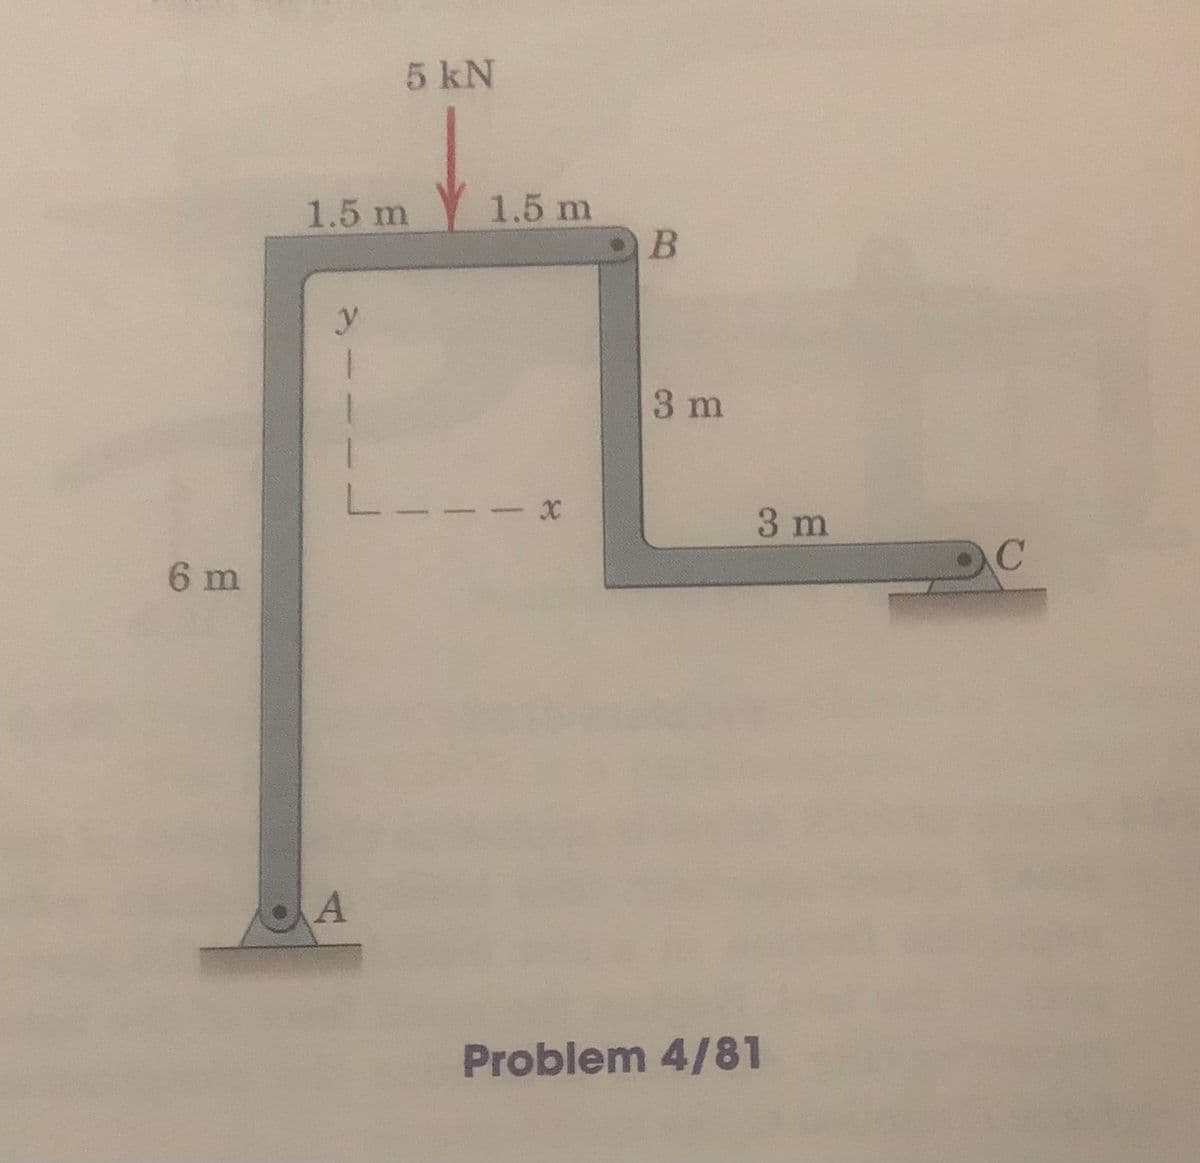 5 kN
1.5 m
1.5 m
3 m
3 m
6 m
A
Problem 4/81
